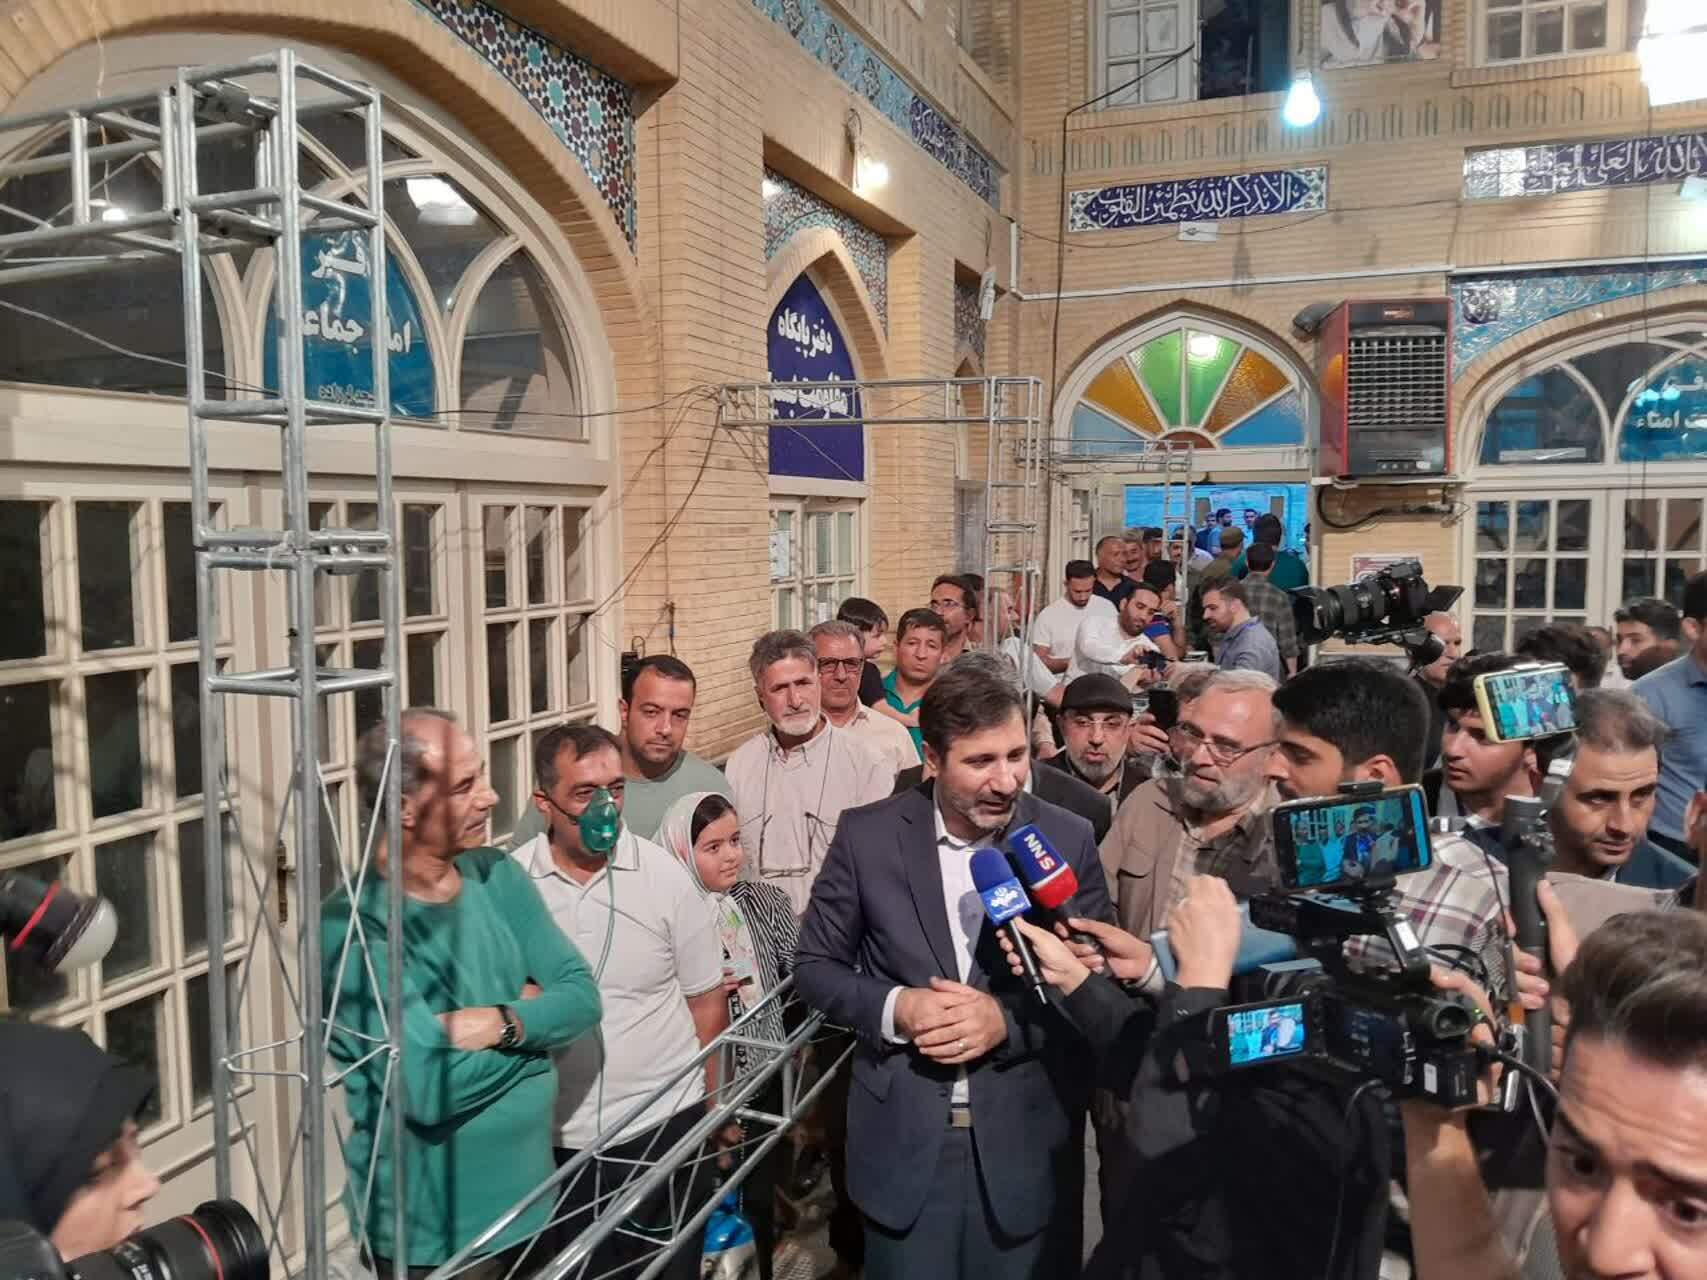 سخنگوی شورای نگهبان در بازدید از مسجد لرزاده با خبرنگاران گفتگو کرد/ مردم نیز از مشکلاتشان گفتند